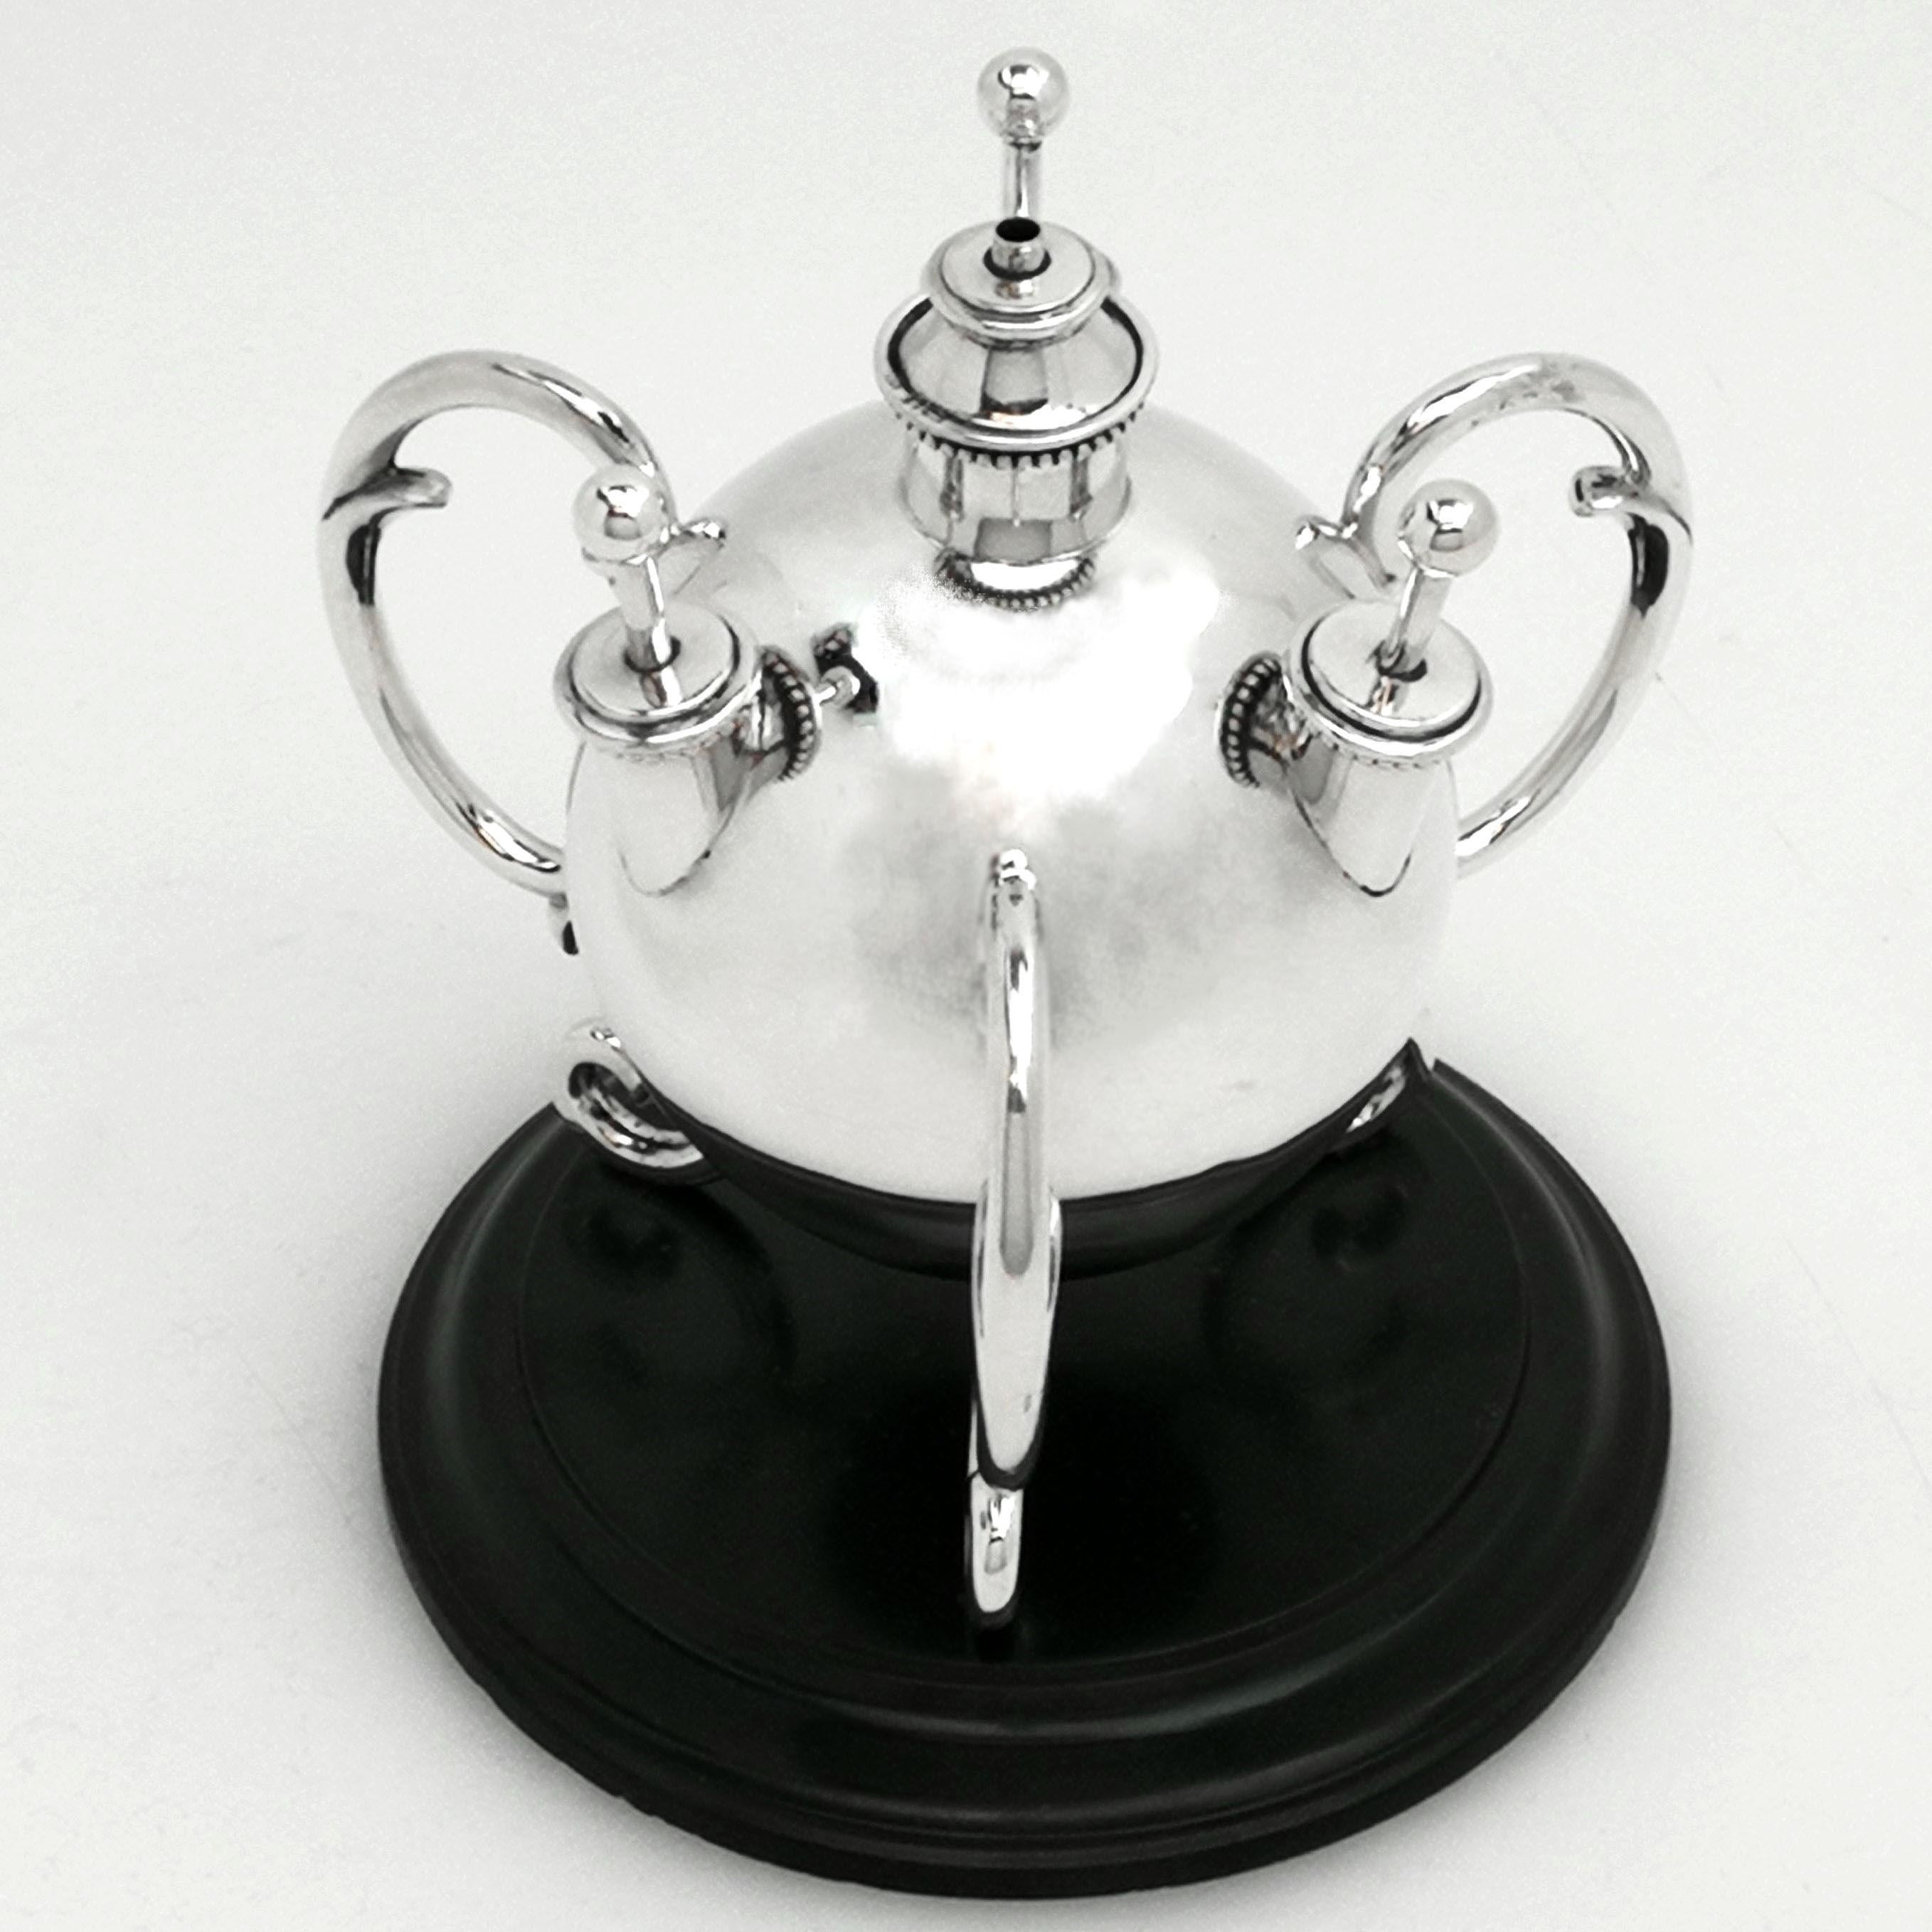 Eine außergewöhnliche antike Edwardian massivem Silber Tabelle Feuerzeug auf einem schwarzen Steinsockel. Dieses kugelförmige Tischfeuerzeug steht auf drei doppelten Schneckenfüßen. Das Feuerzeug hat einen zentralen Brenner und drei einzelne